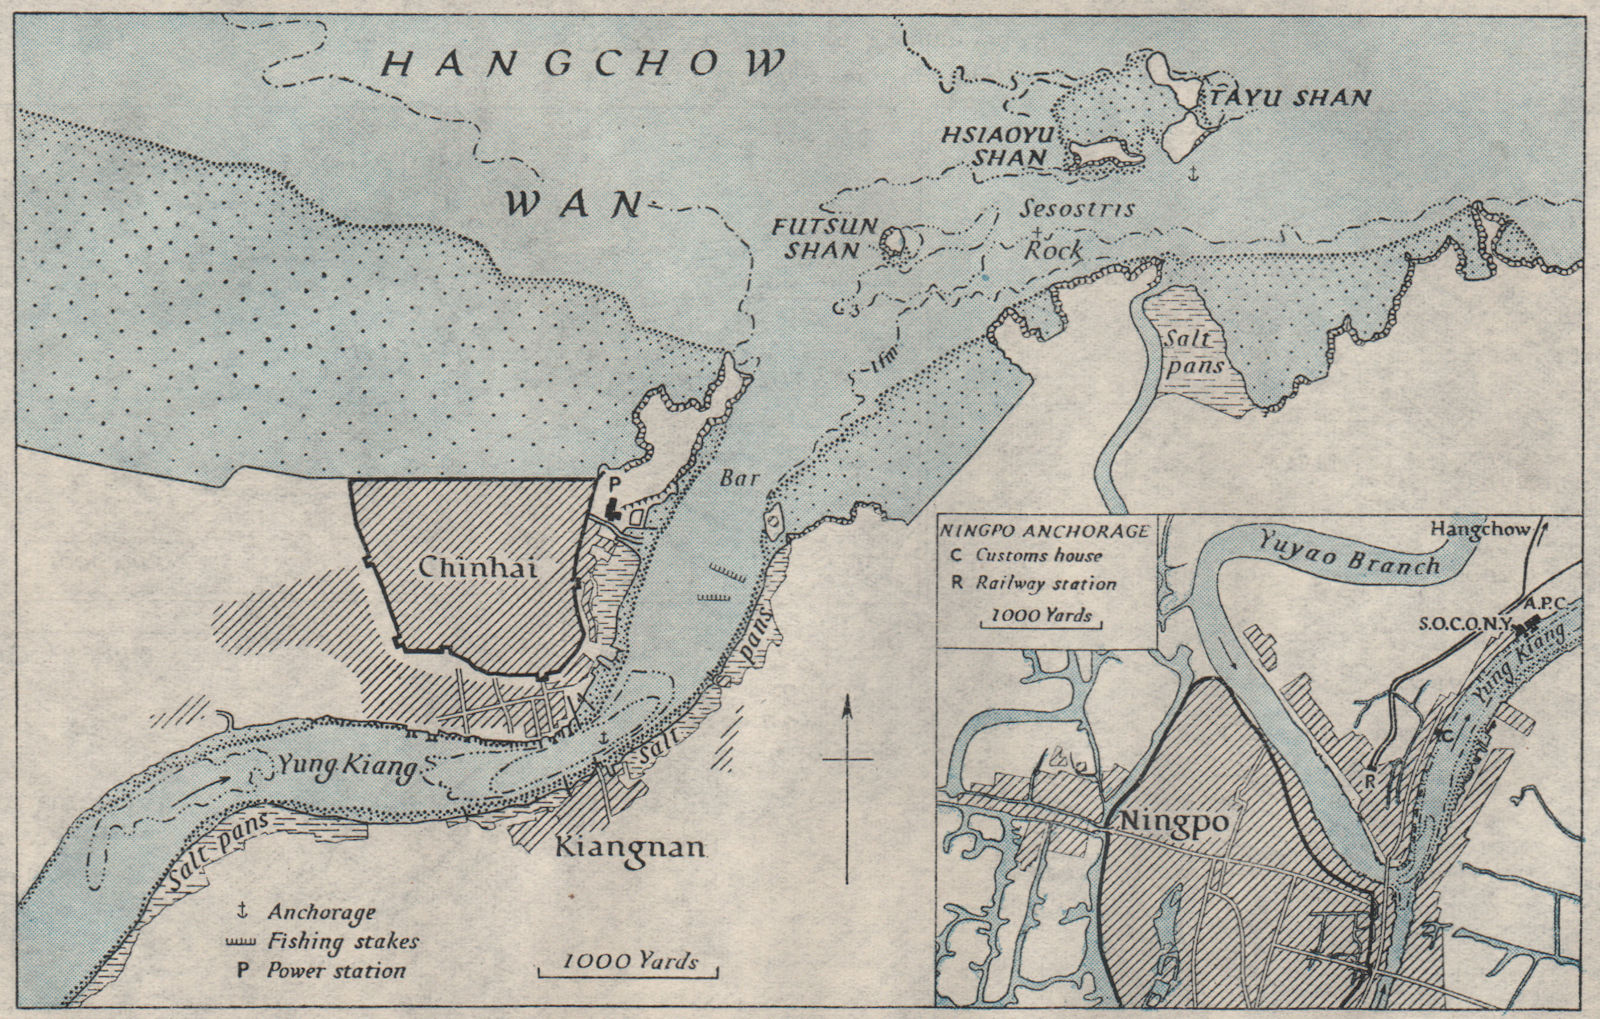 Ningpo/NINGBO Zhenhai Yong Kiang. Hangzhou. China. WW2 INTELLIGENCE MAP 1945